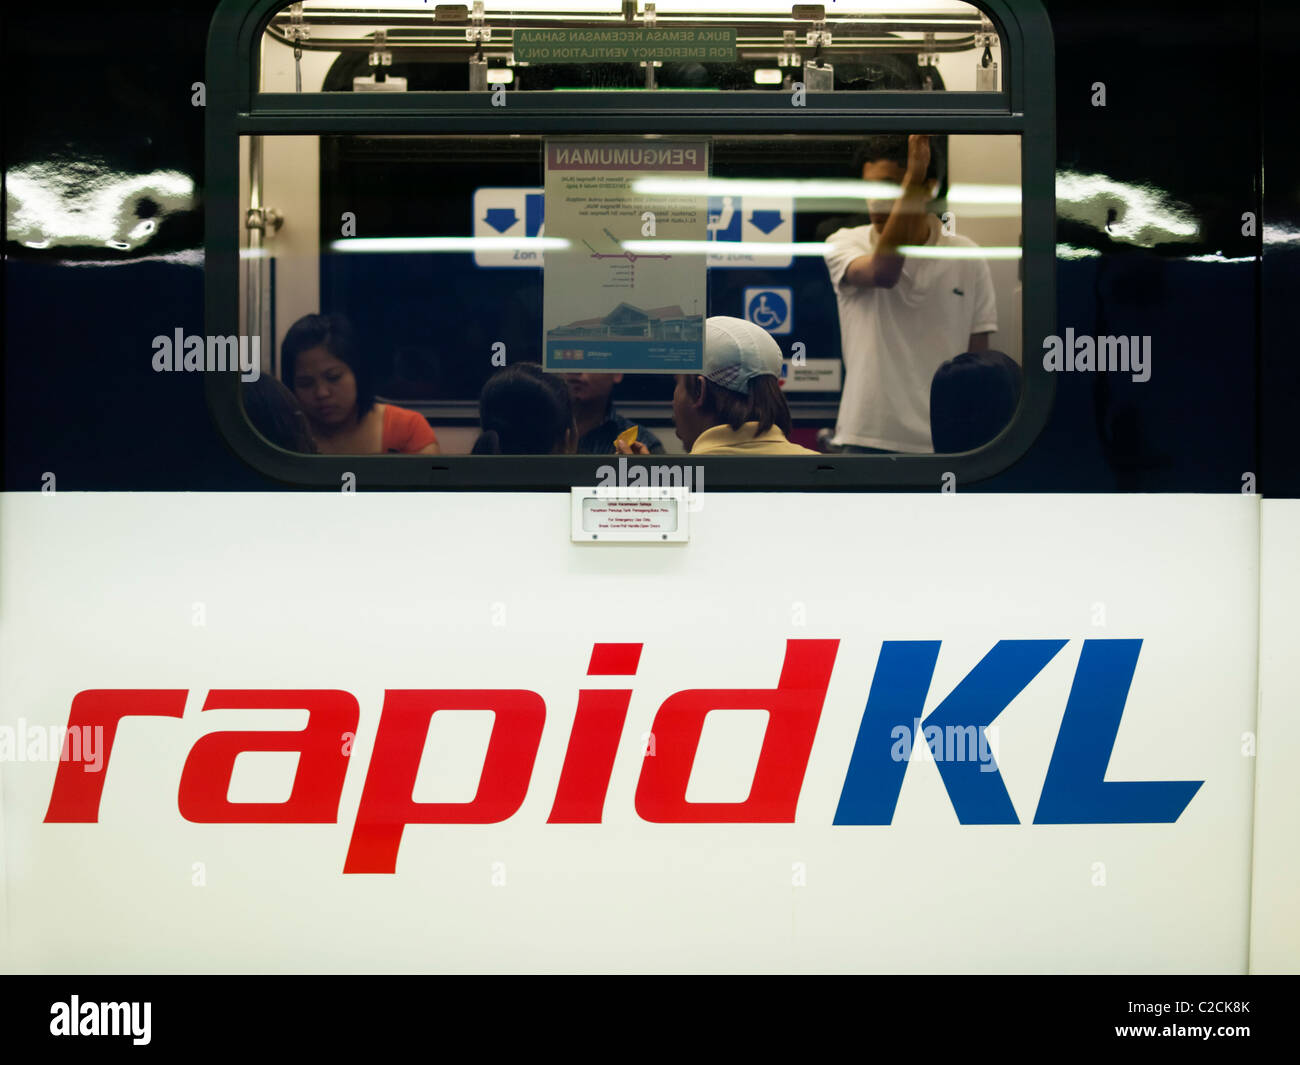 Kuala Lumpur Rapid KL Stock Photo